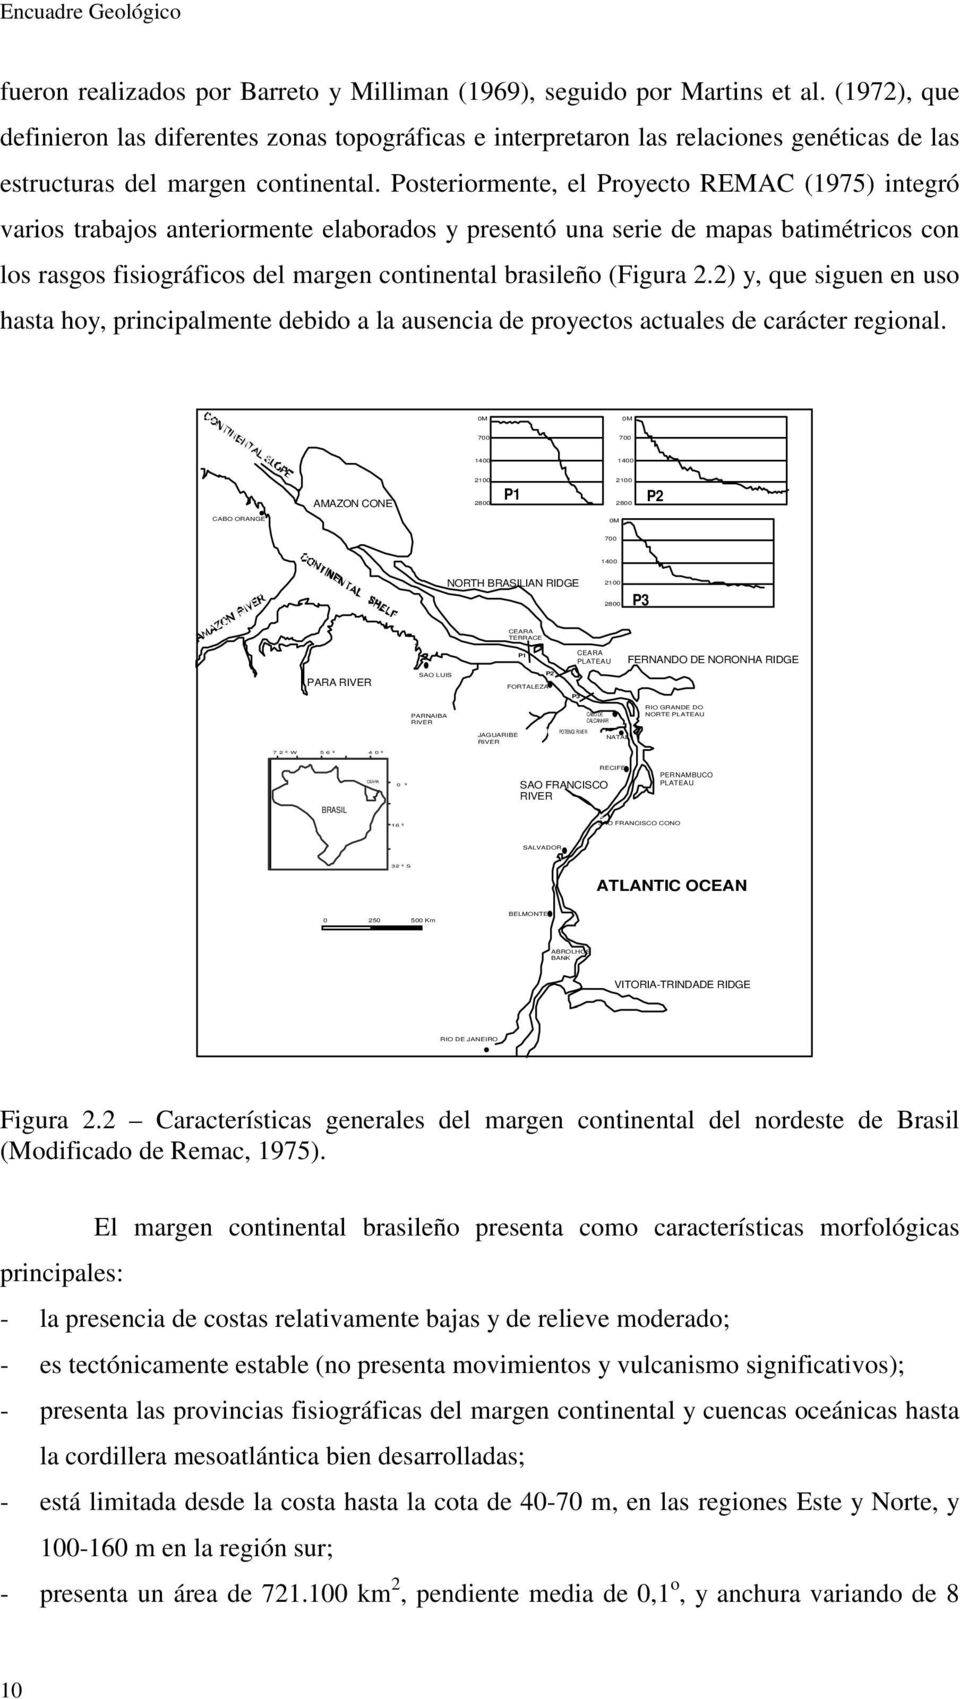 Posteriormente, el Proyecto REMAC (1975) integró varios trabajos anteriormente elaborados y presentó una serie de mapas batimétricos con los rasgos fisiográficos del margen continental brasileño